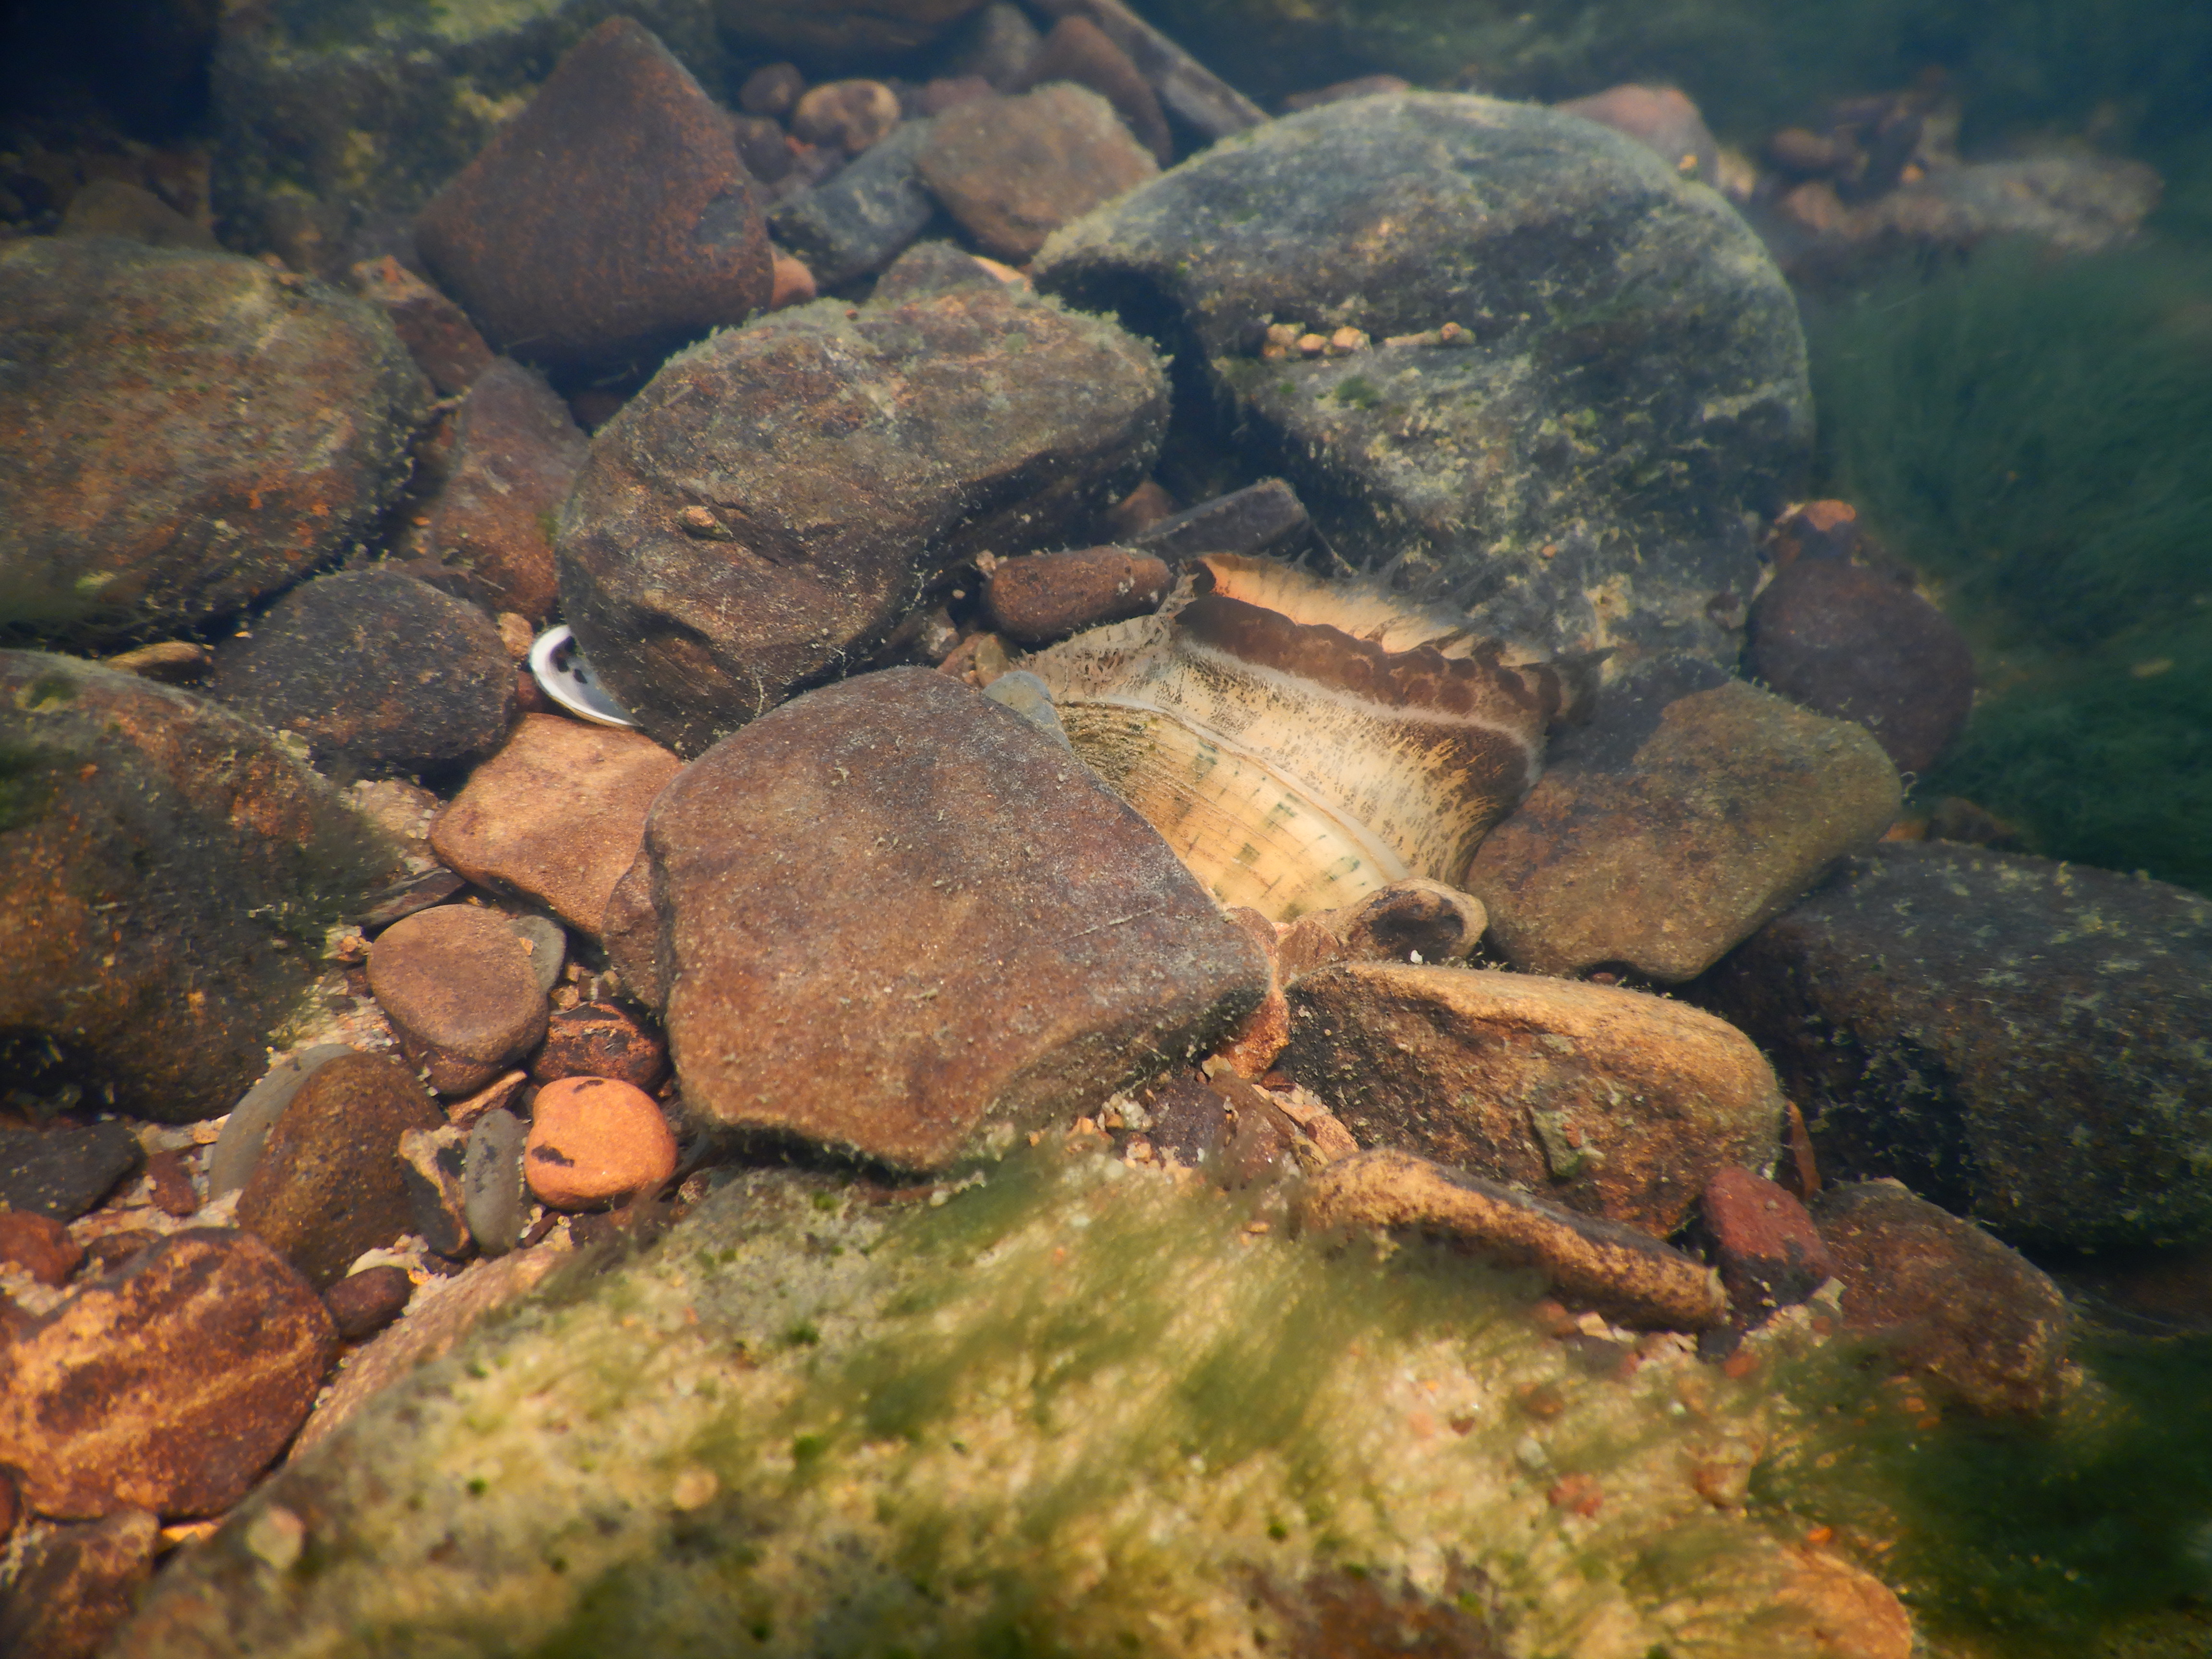 A speckled pocketbook mussel on rocks